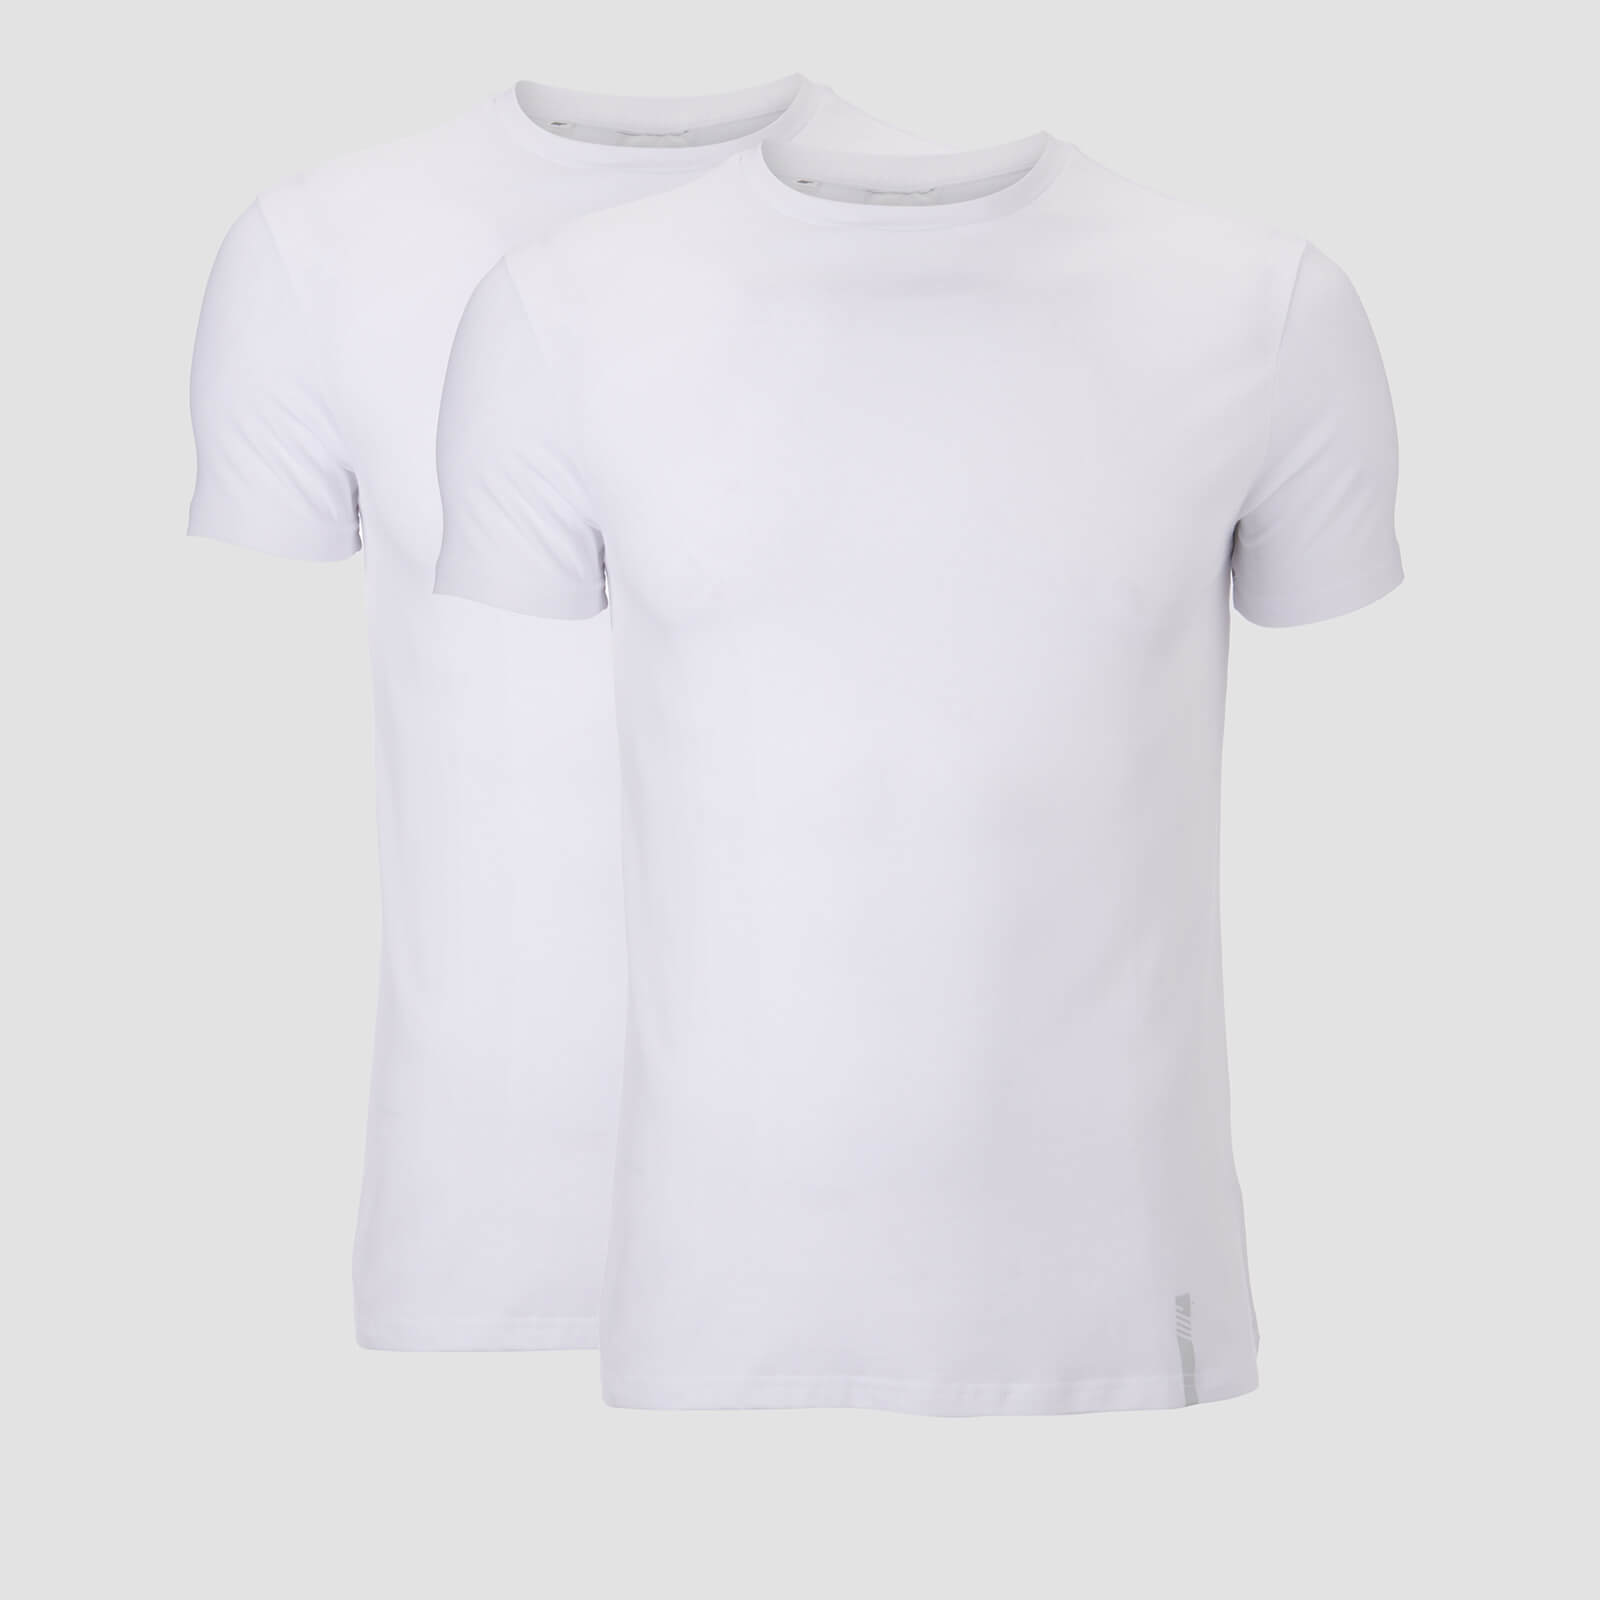 Mp T-shirt Luxe Classic (confezione da 2) - Bianco/Bianco - XXL